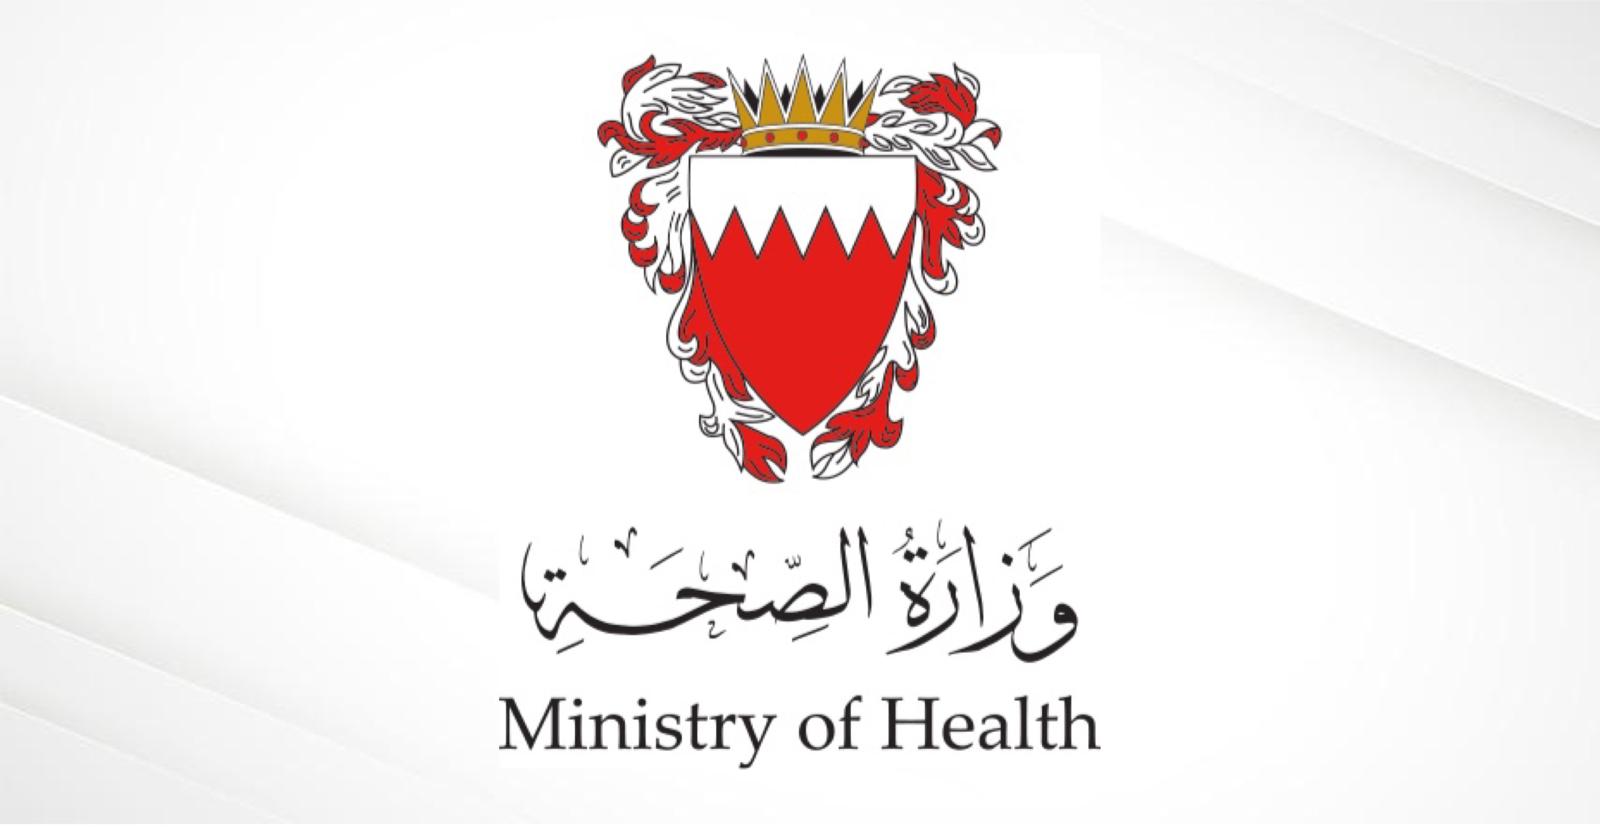 وزارة الصحة توضح: لا توجه للخصخصة في الخدمات المساندة .. إعادة الهيكلة للمنظومة الصحية تطبيقاً لقانون الضمان الصحي ..